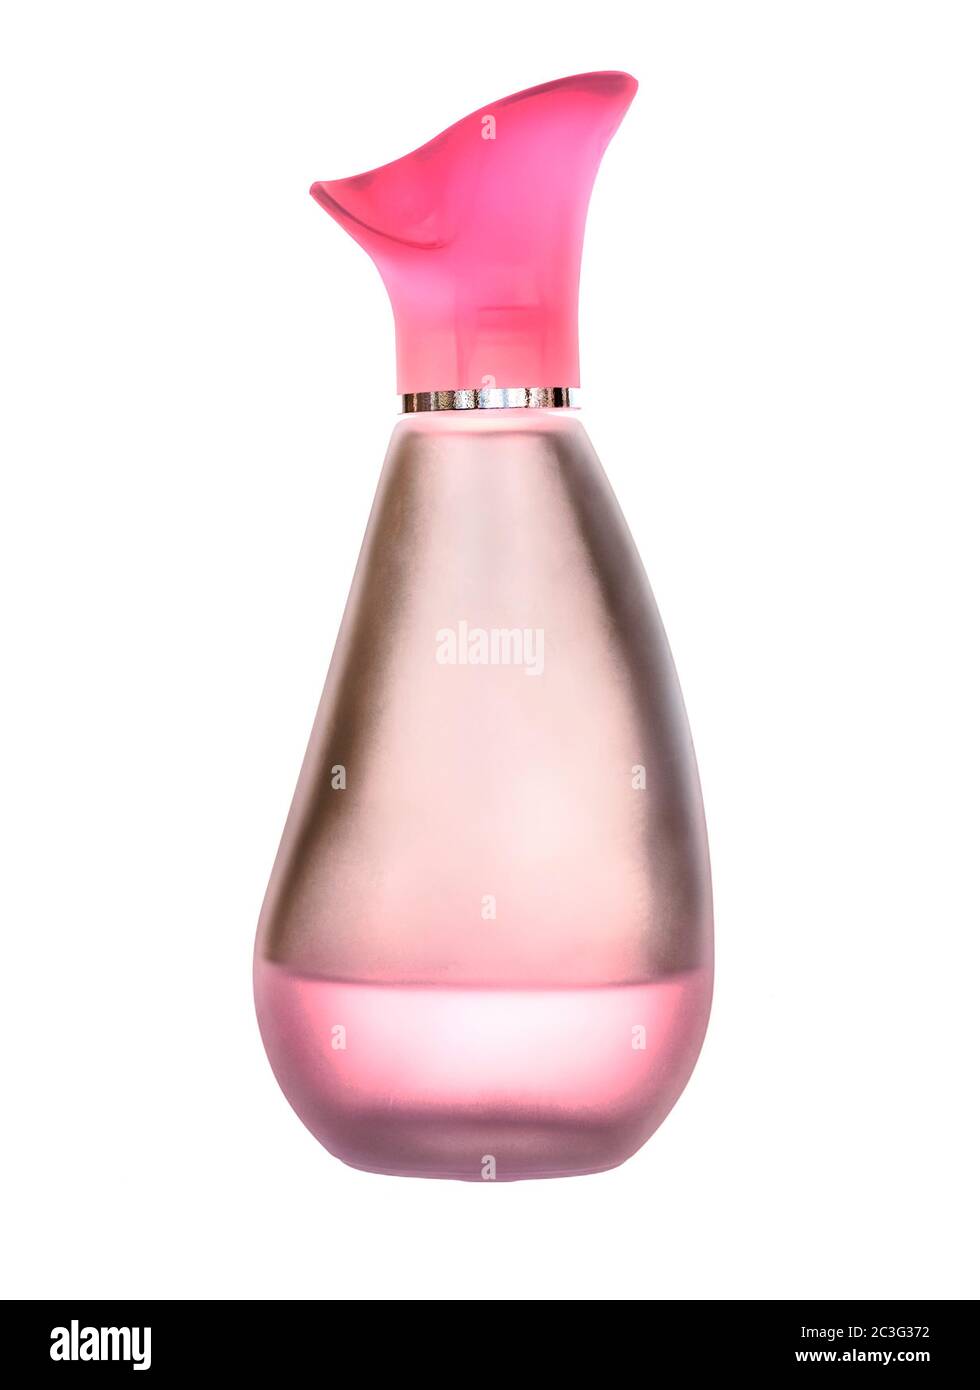 Une bouteille de parfum pour femmes, presque vide sur fond blanc Banque D'Images